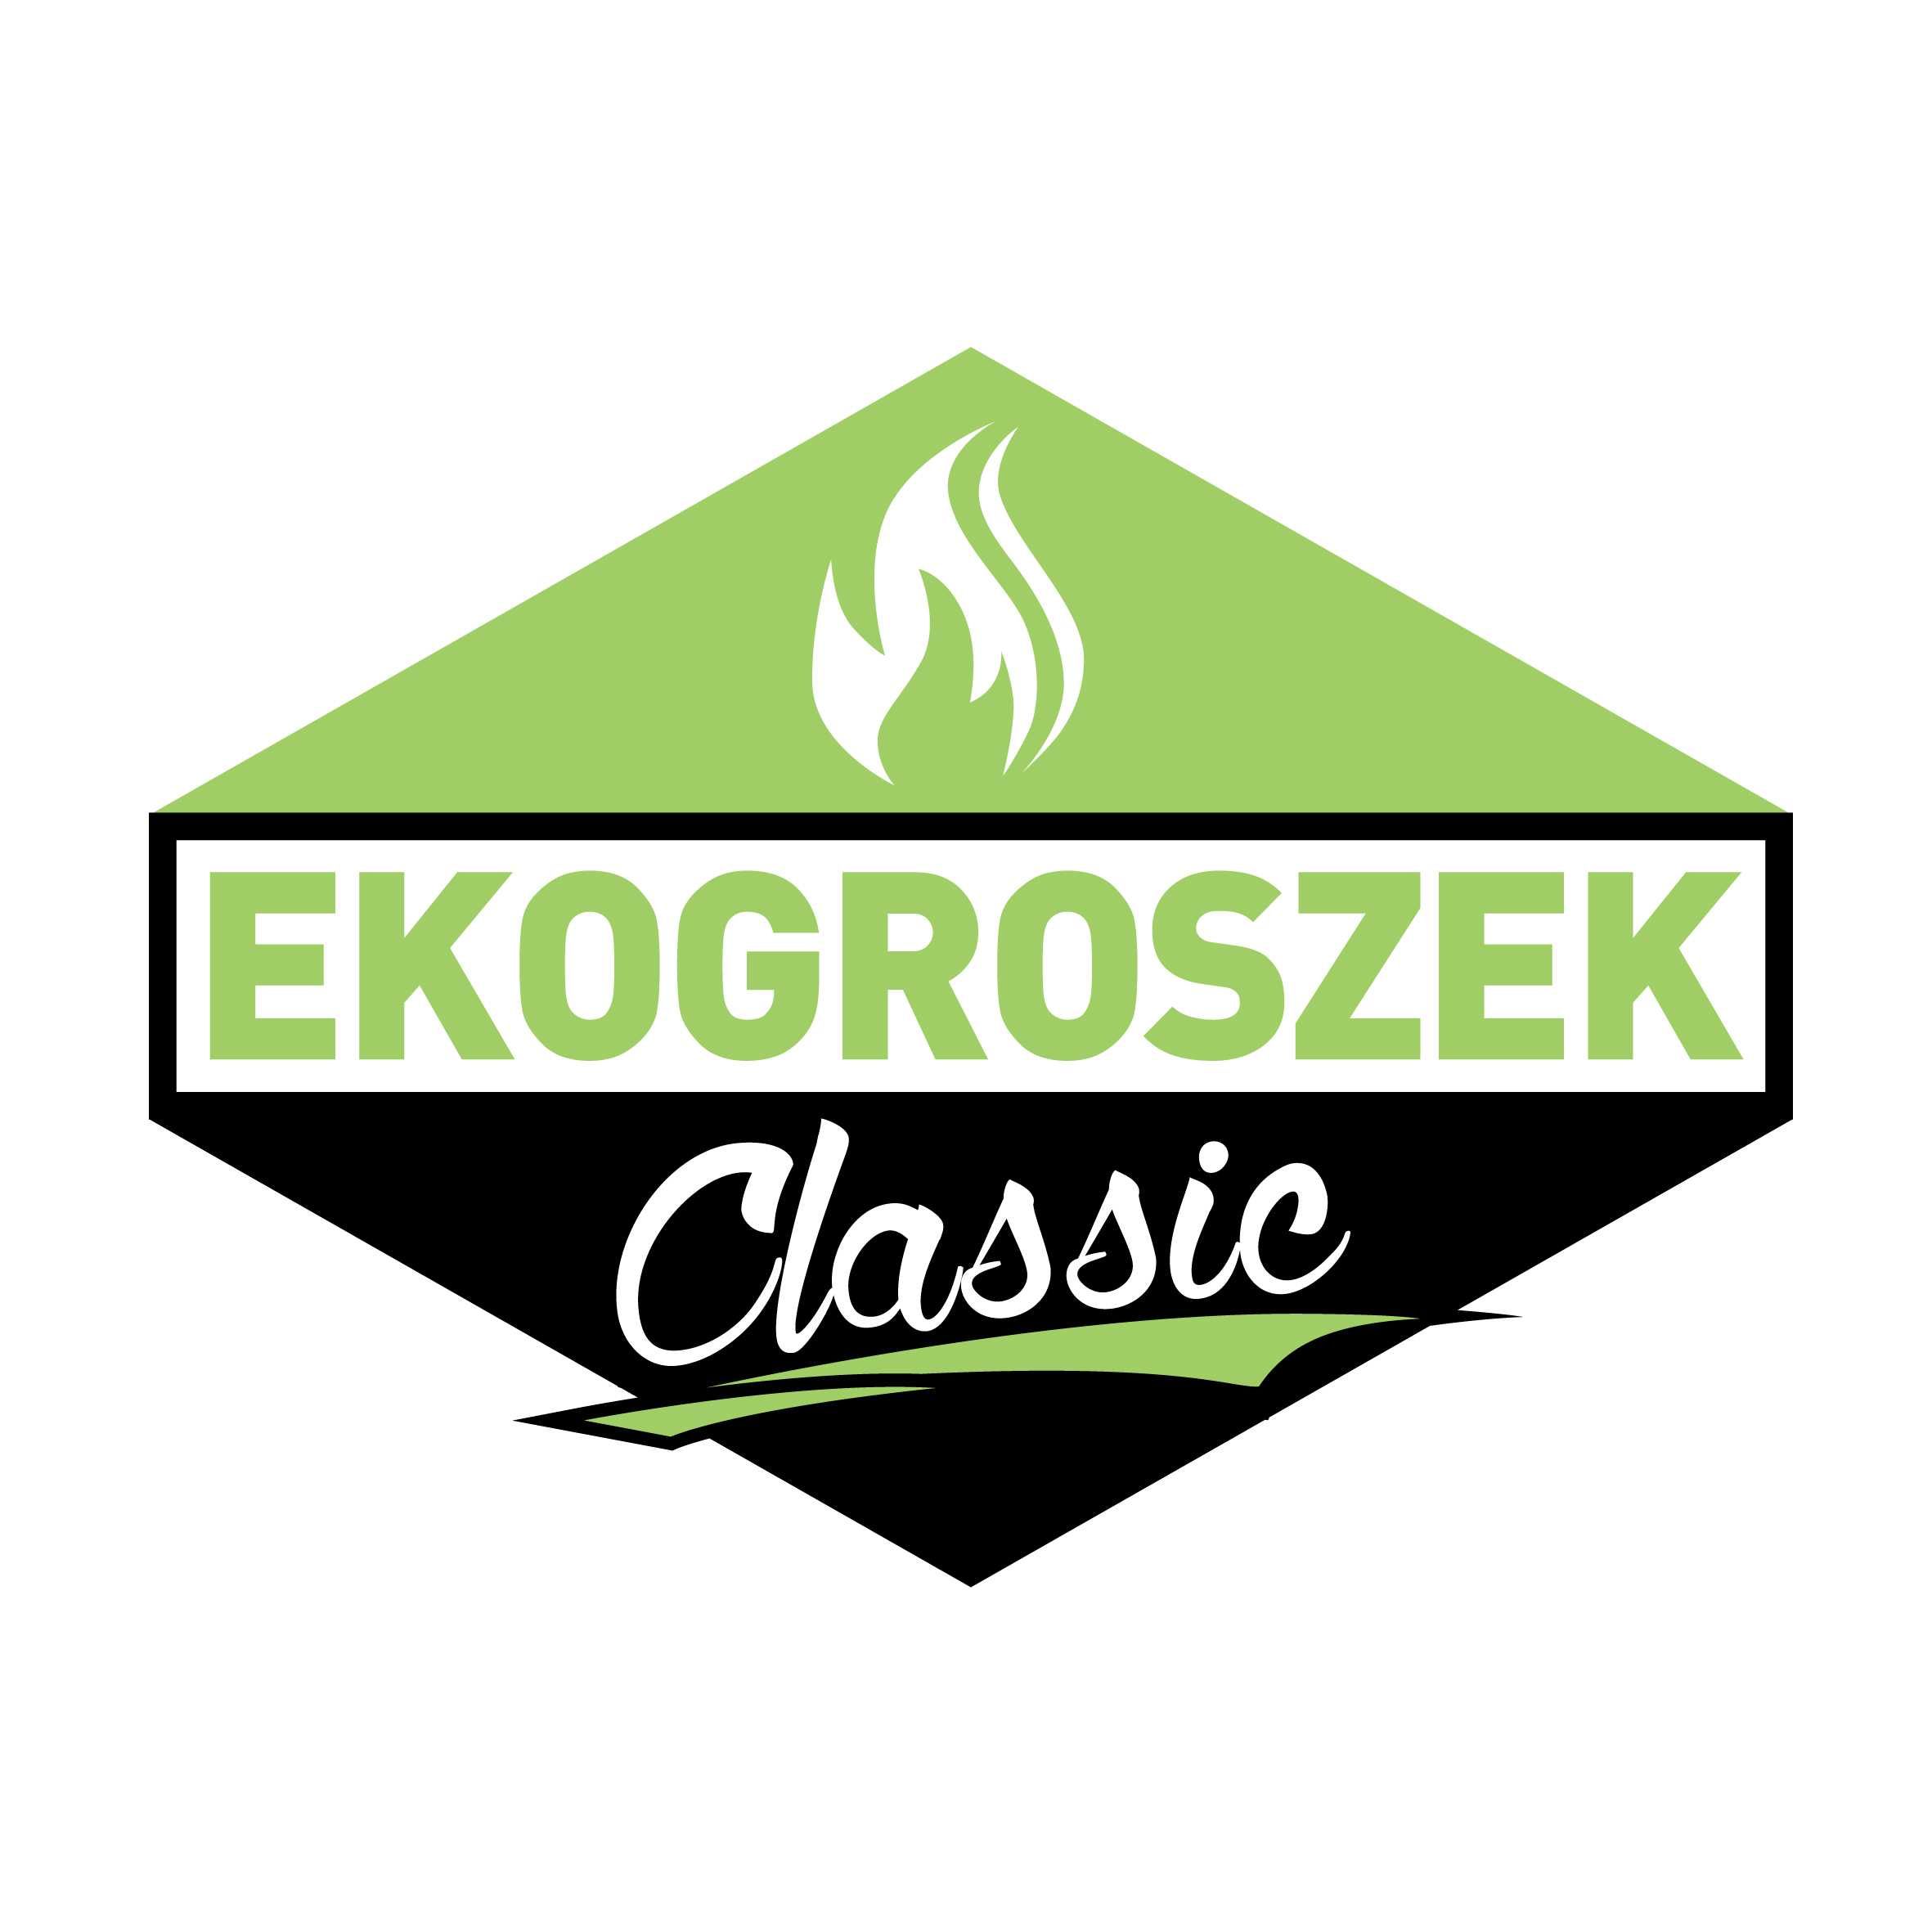 Ekogroszek CLASSIC 40 x 25 kg (JG)